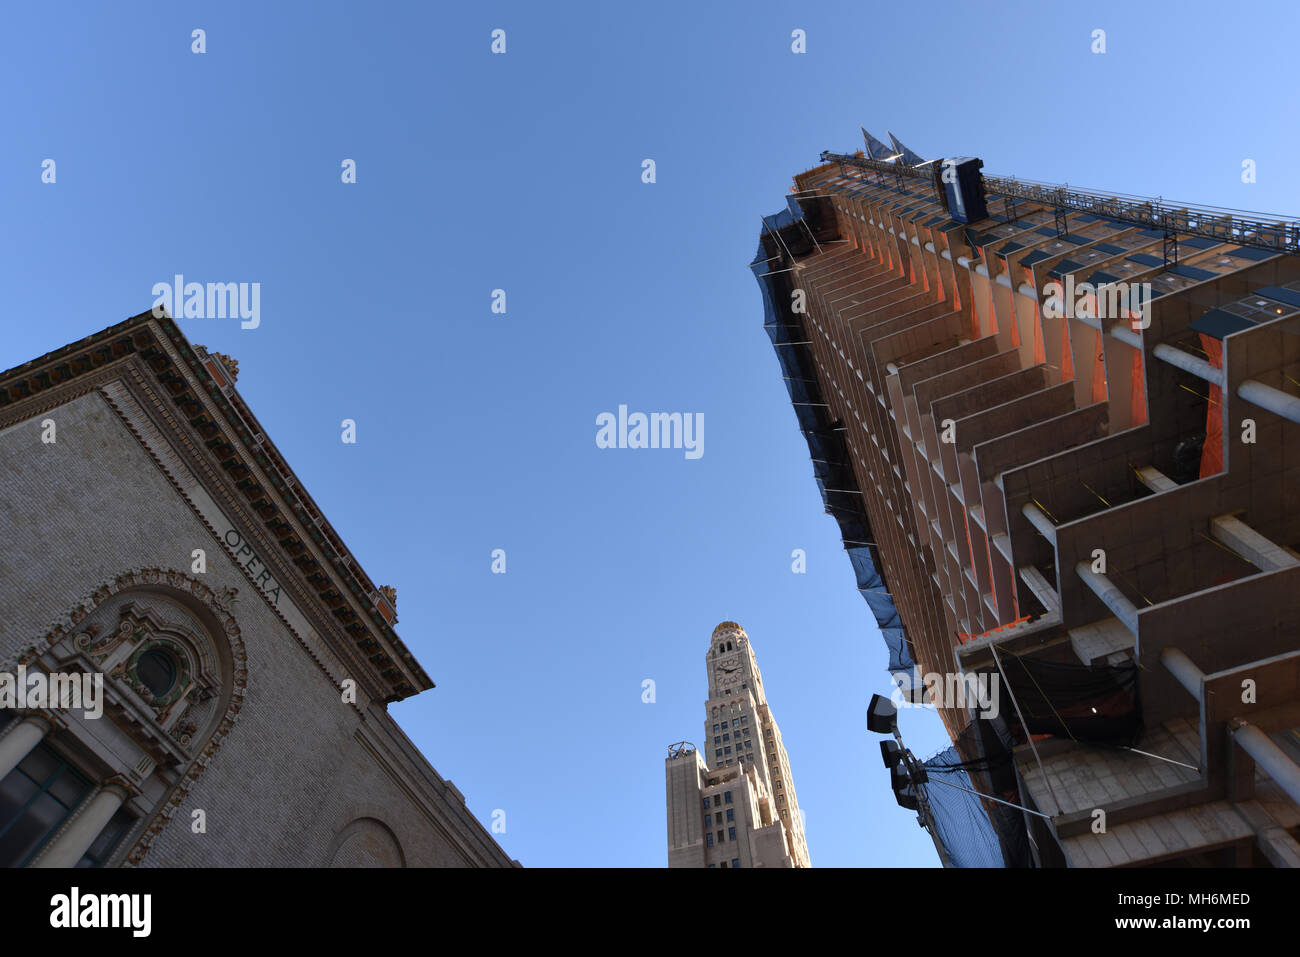 Costruzione di 300 Ashland Place, Brooklyn NY, 20 Novembre, 2015. Williamsburgh Savings Bank Tower nel centro,Peter Jay Sharp edificio a sinistra. Foto Stock